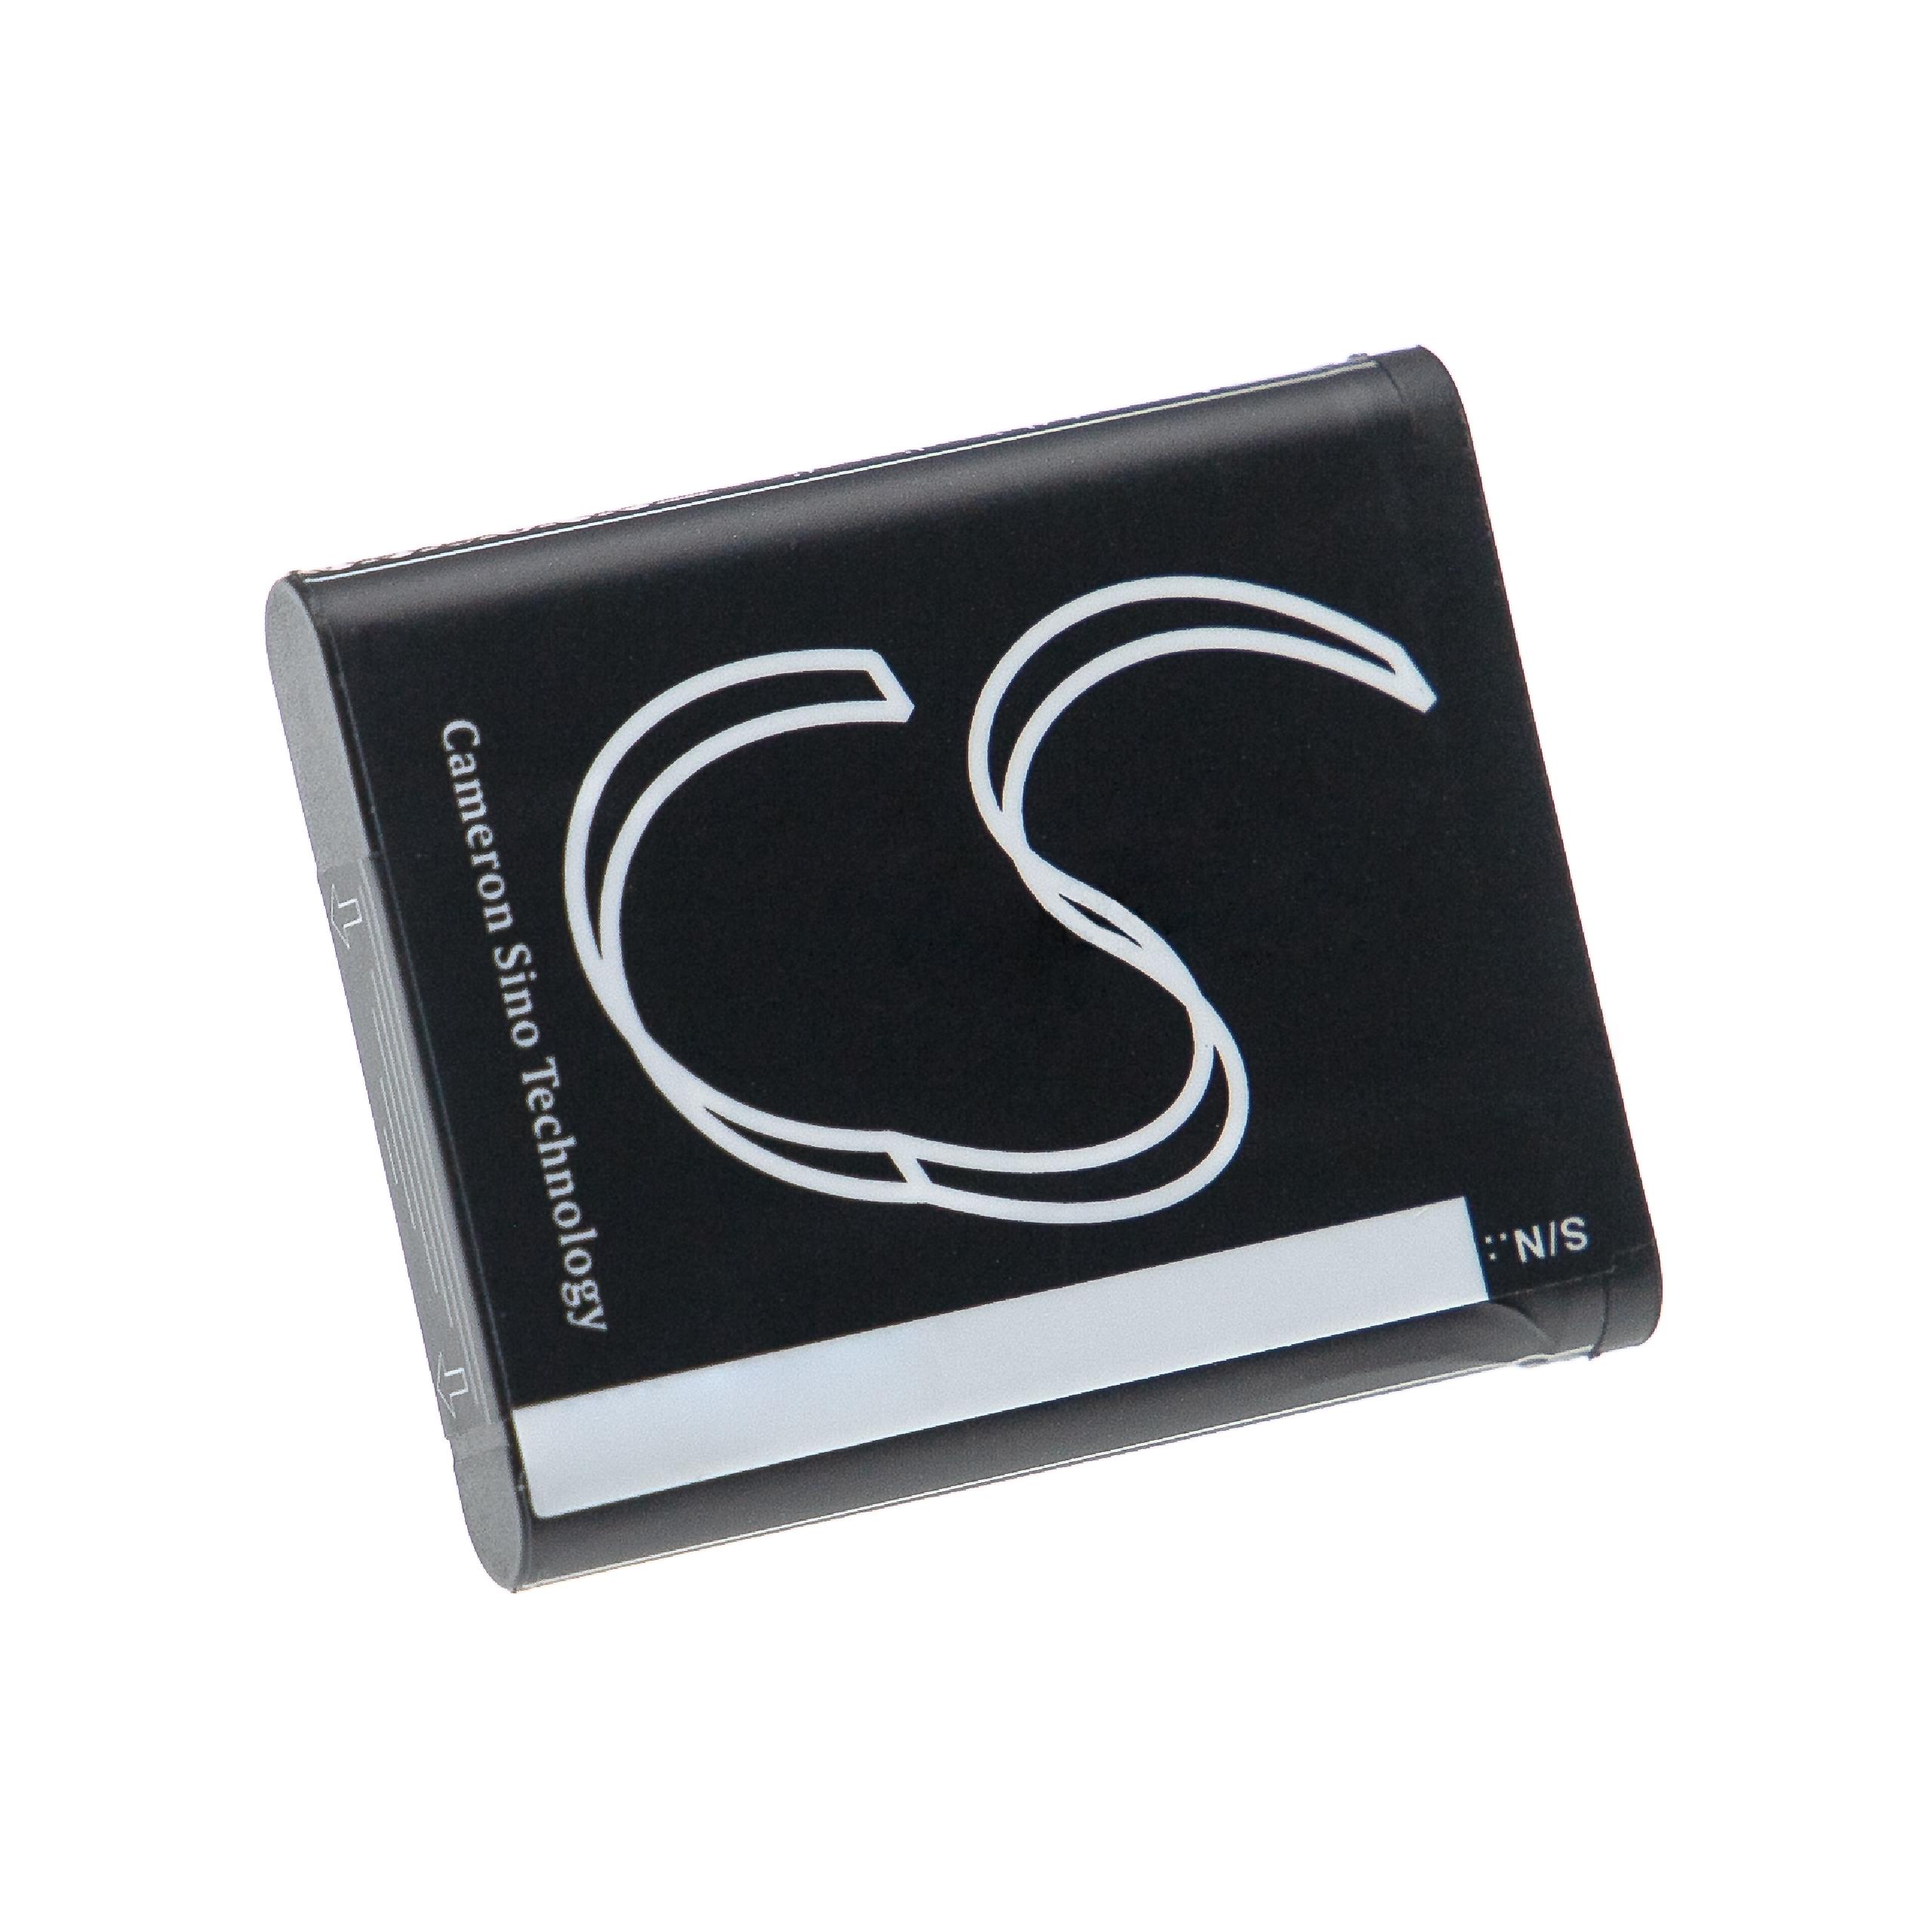 Akumulator do słuchawek bezprzewodowych zamiennik Sony SP-73, SP73, 4-296-914-01 - 1050 mAh 3,7 V Li-Ion